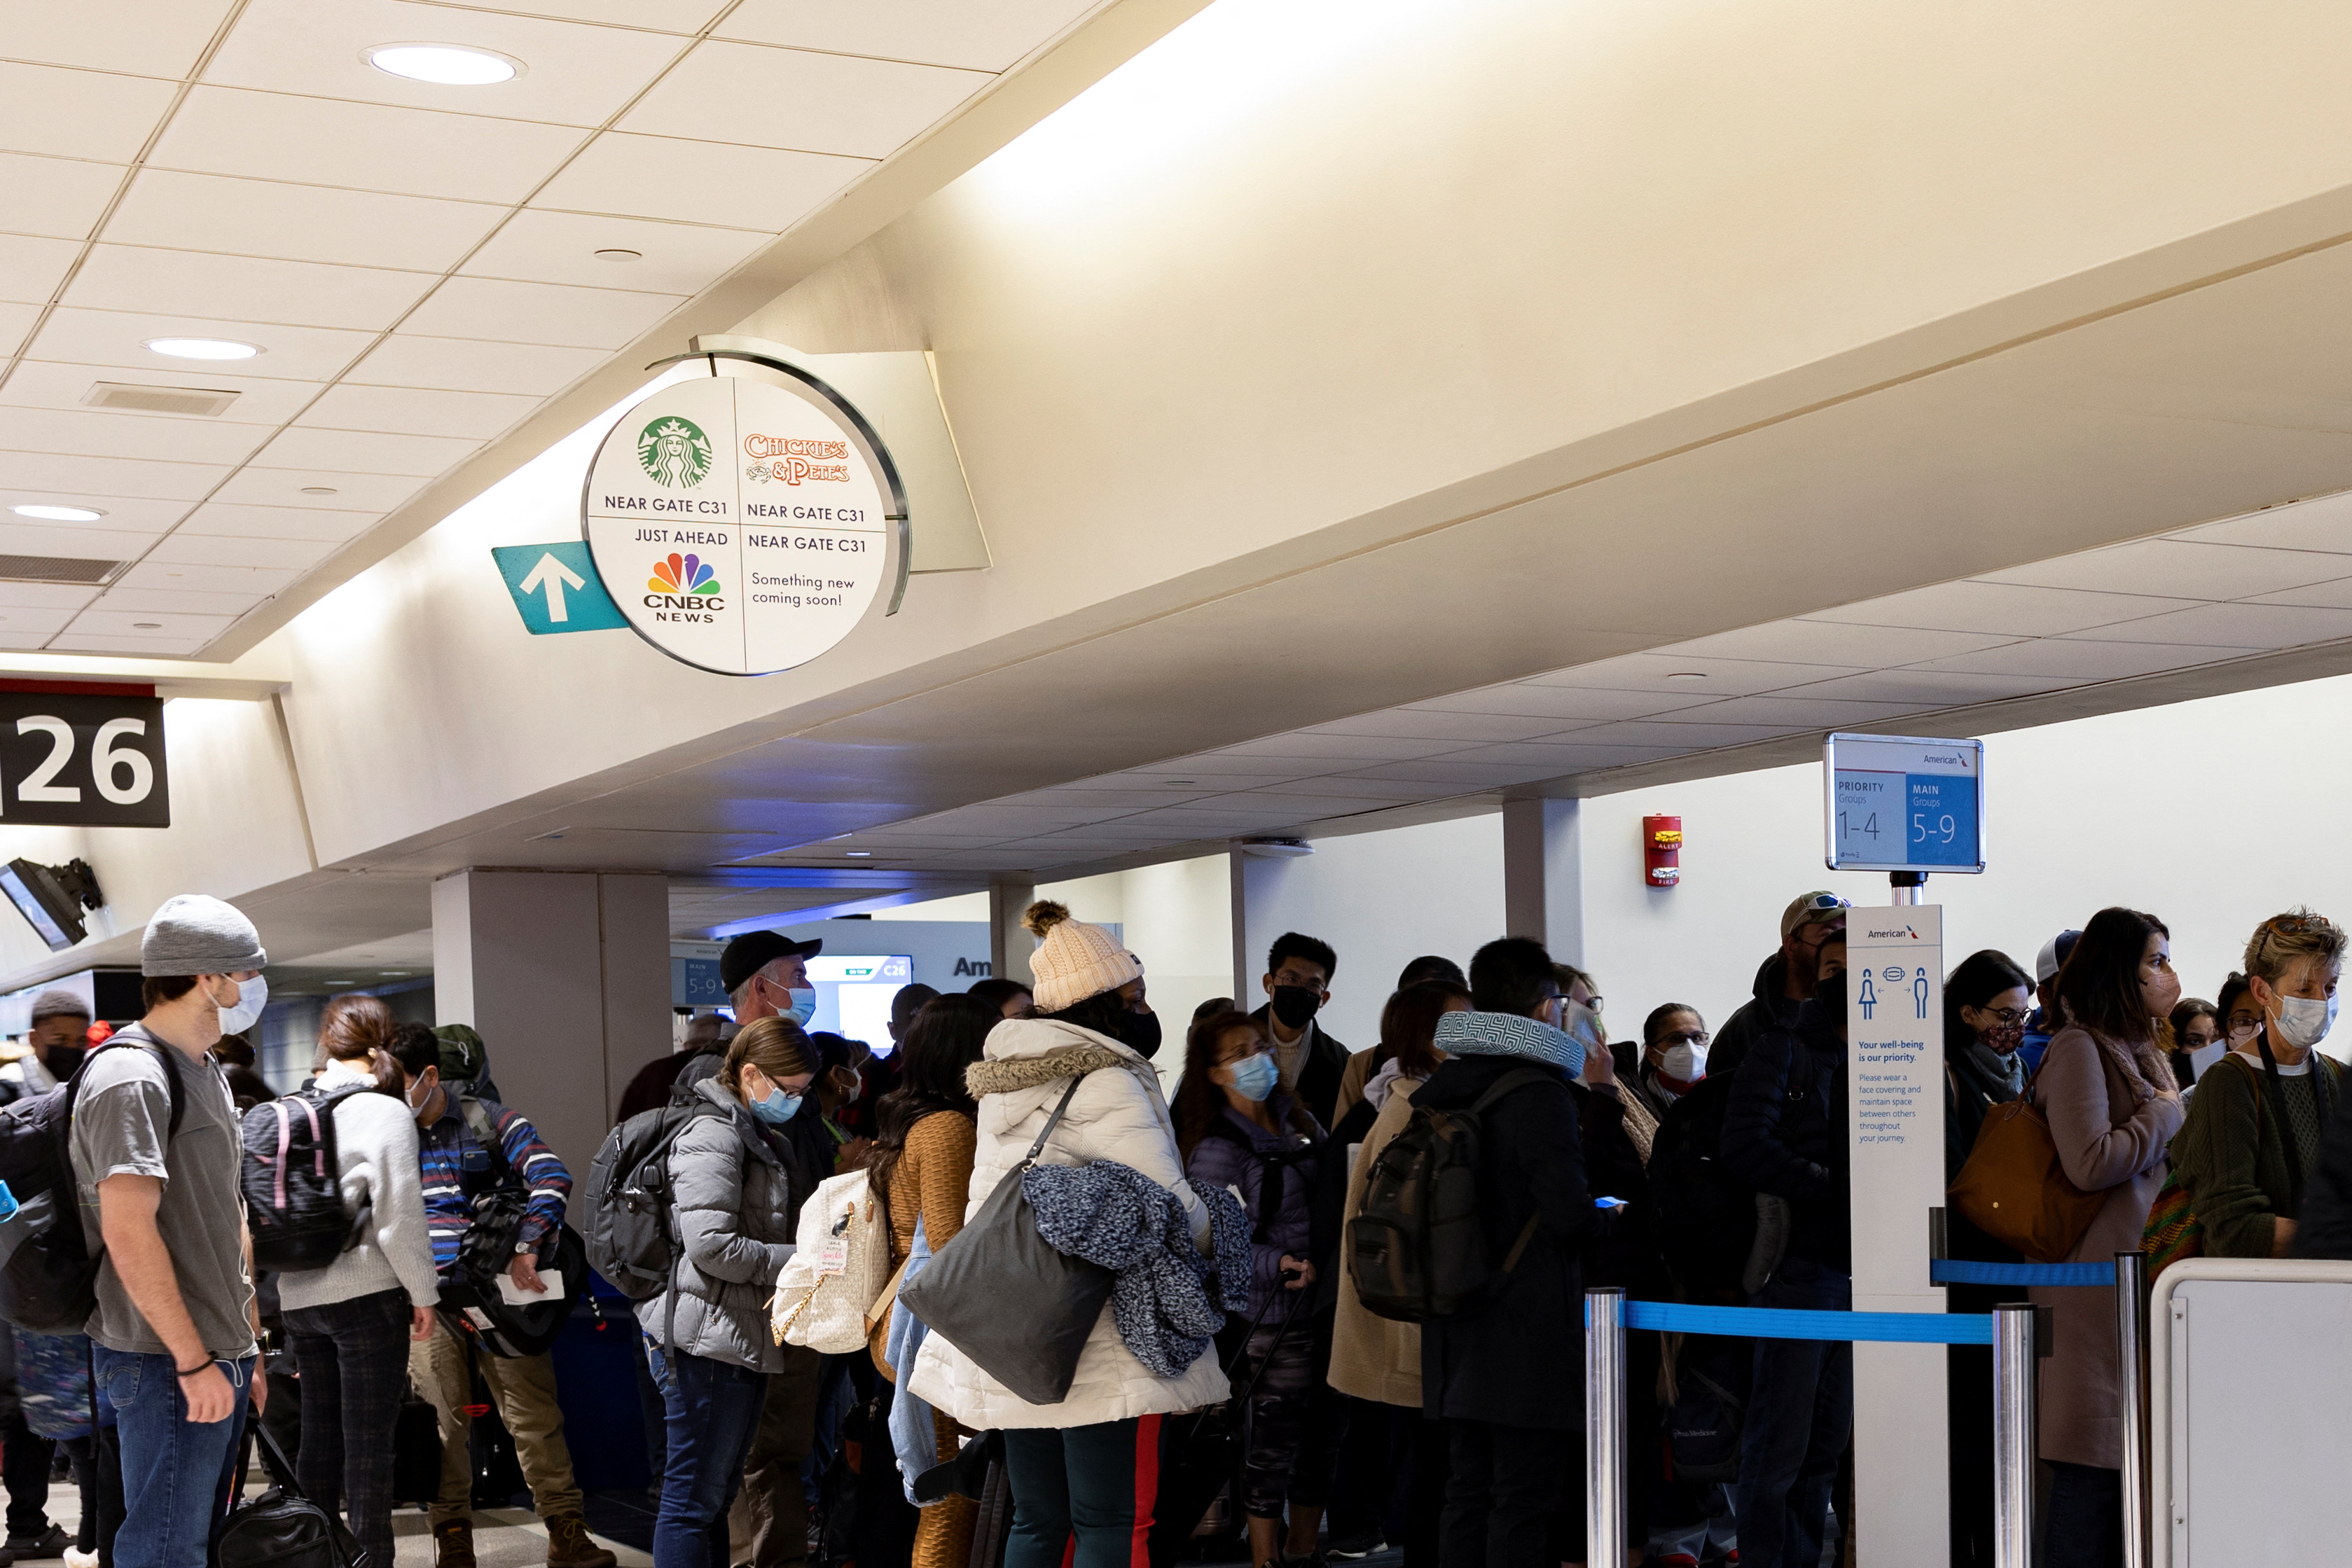 Viajeros esperan para abordar un vuelo en el Aeropuerto Internacional de Filadelfia (PHL) en Filadelfia, Pensilvania, Estados Unidos, 23 de diciembre de 2021. REUTERS/Hannah Beier